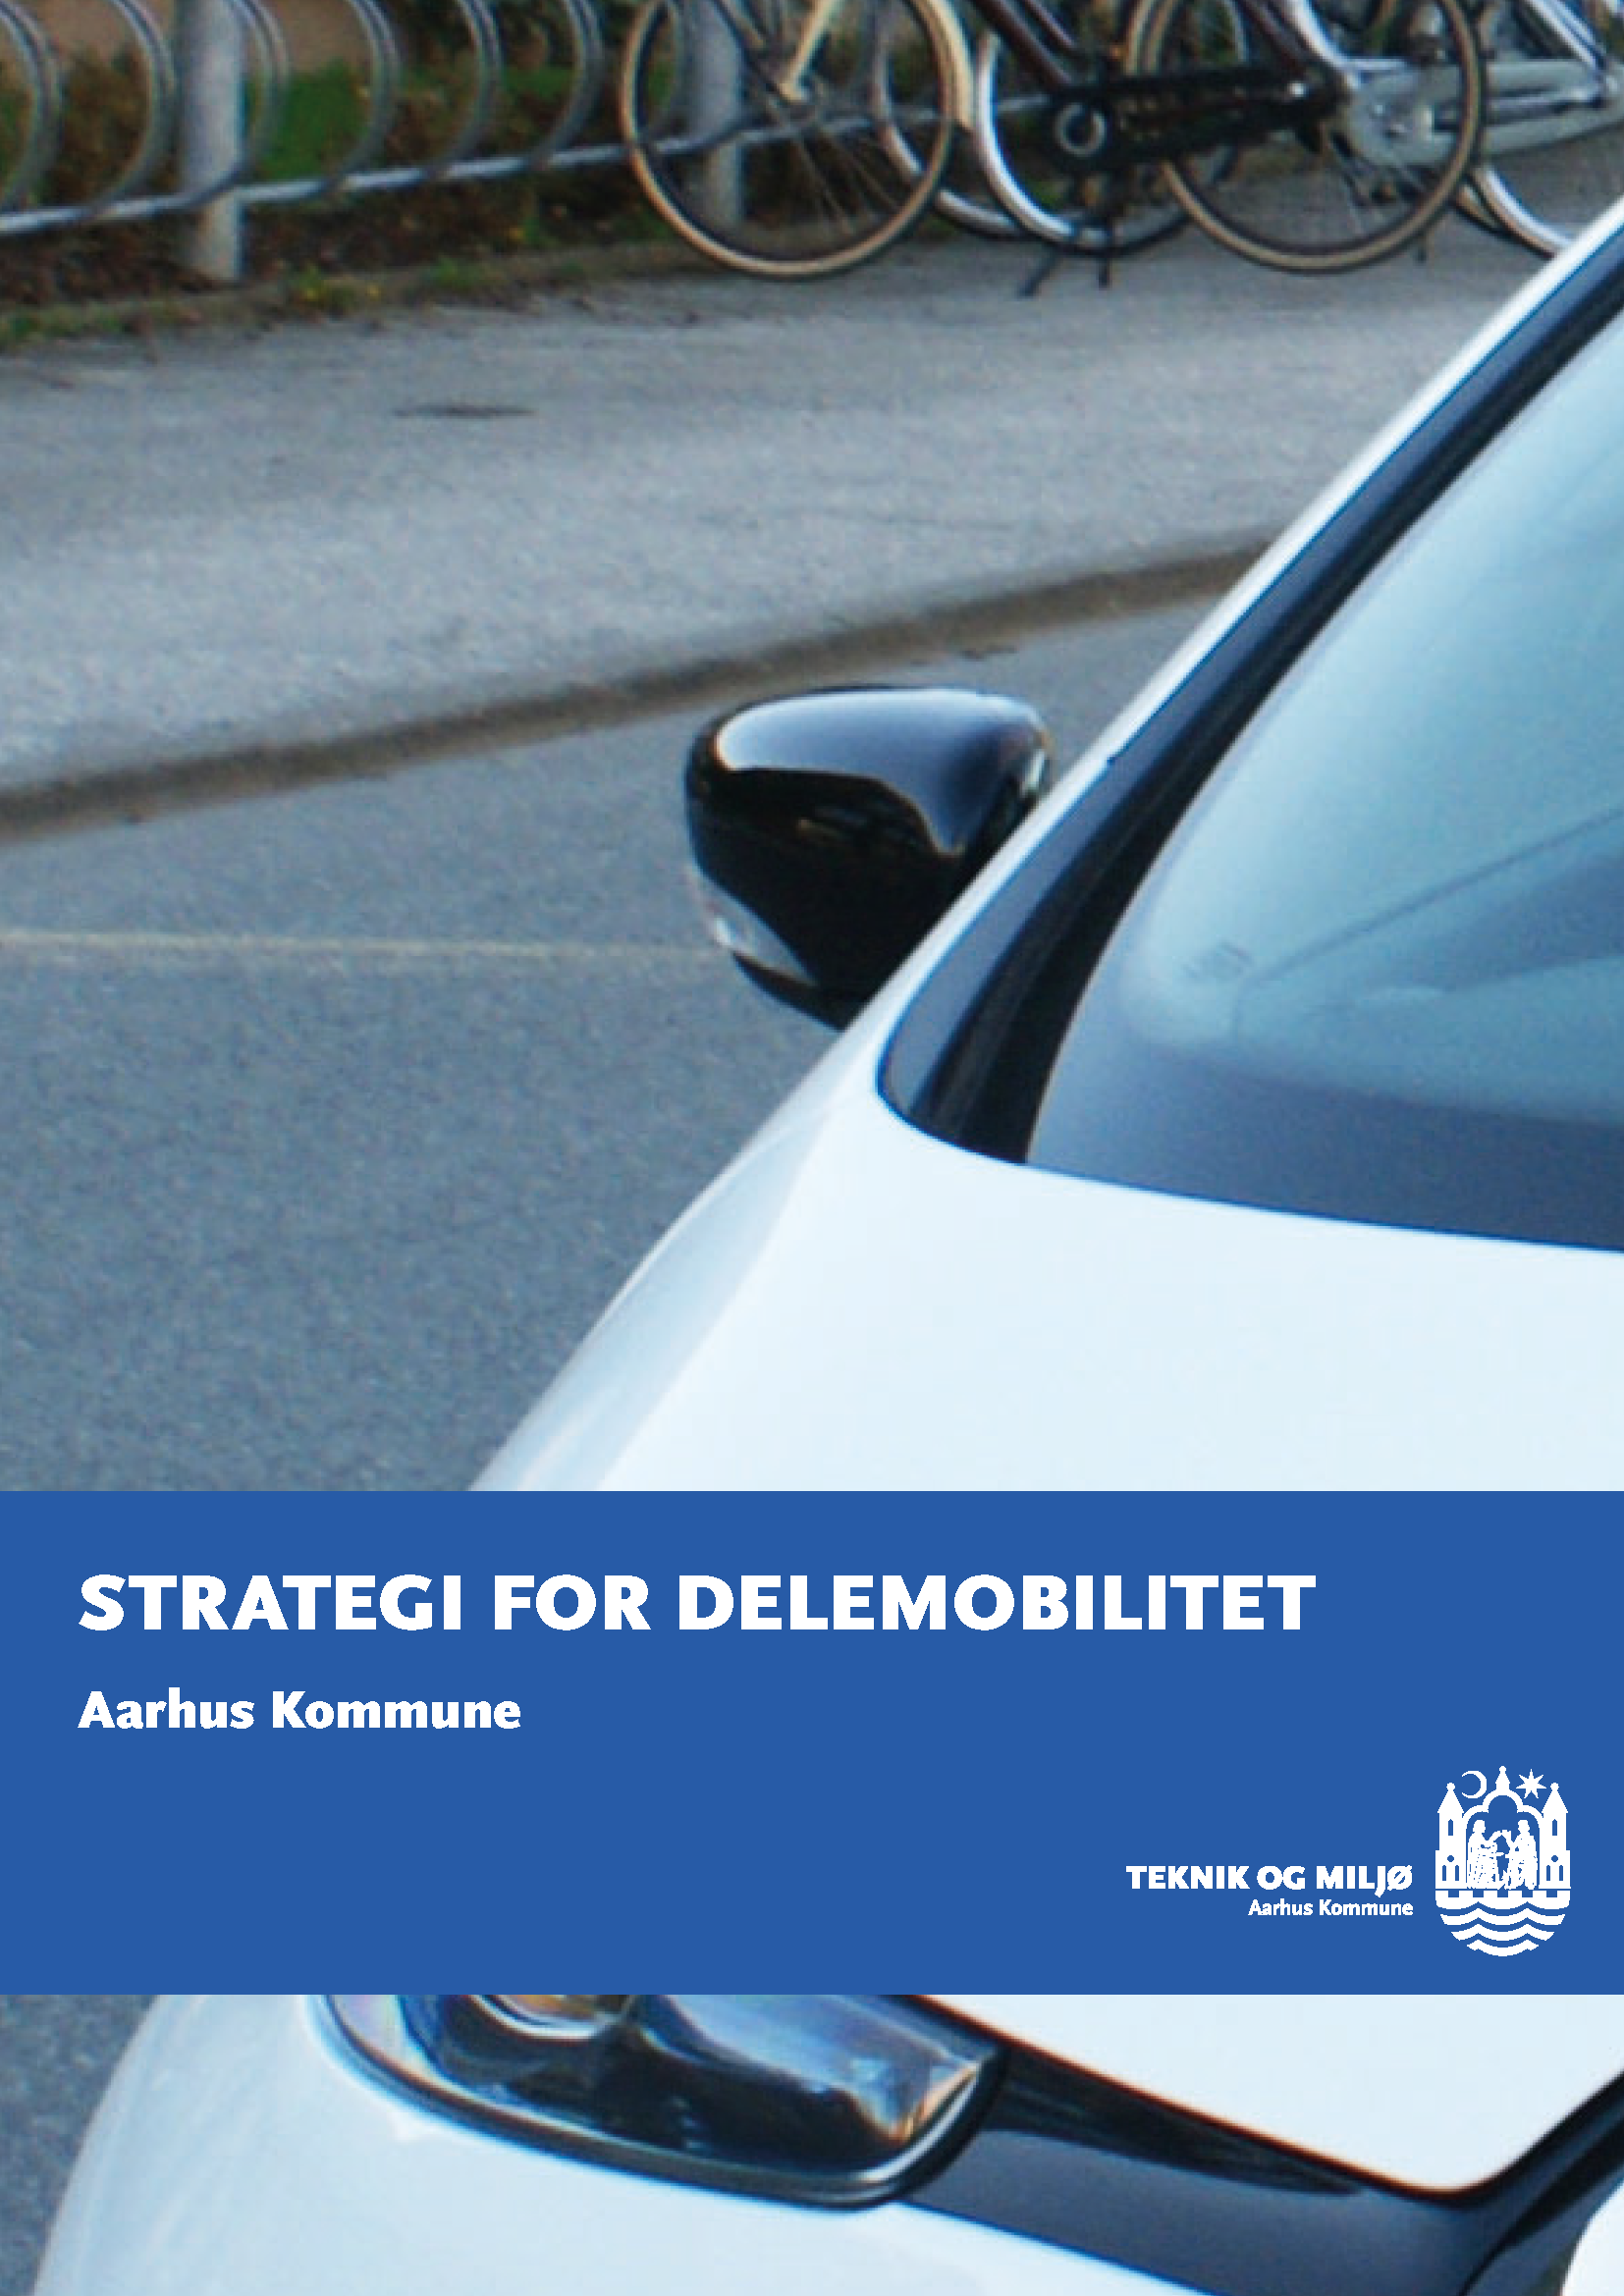 Strategi for delemobilitet i Aarhus